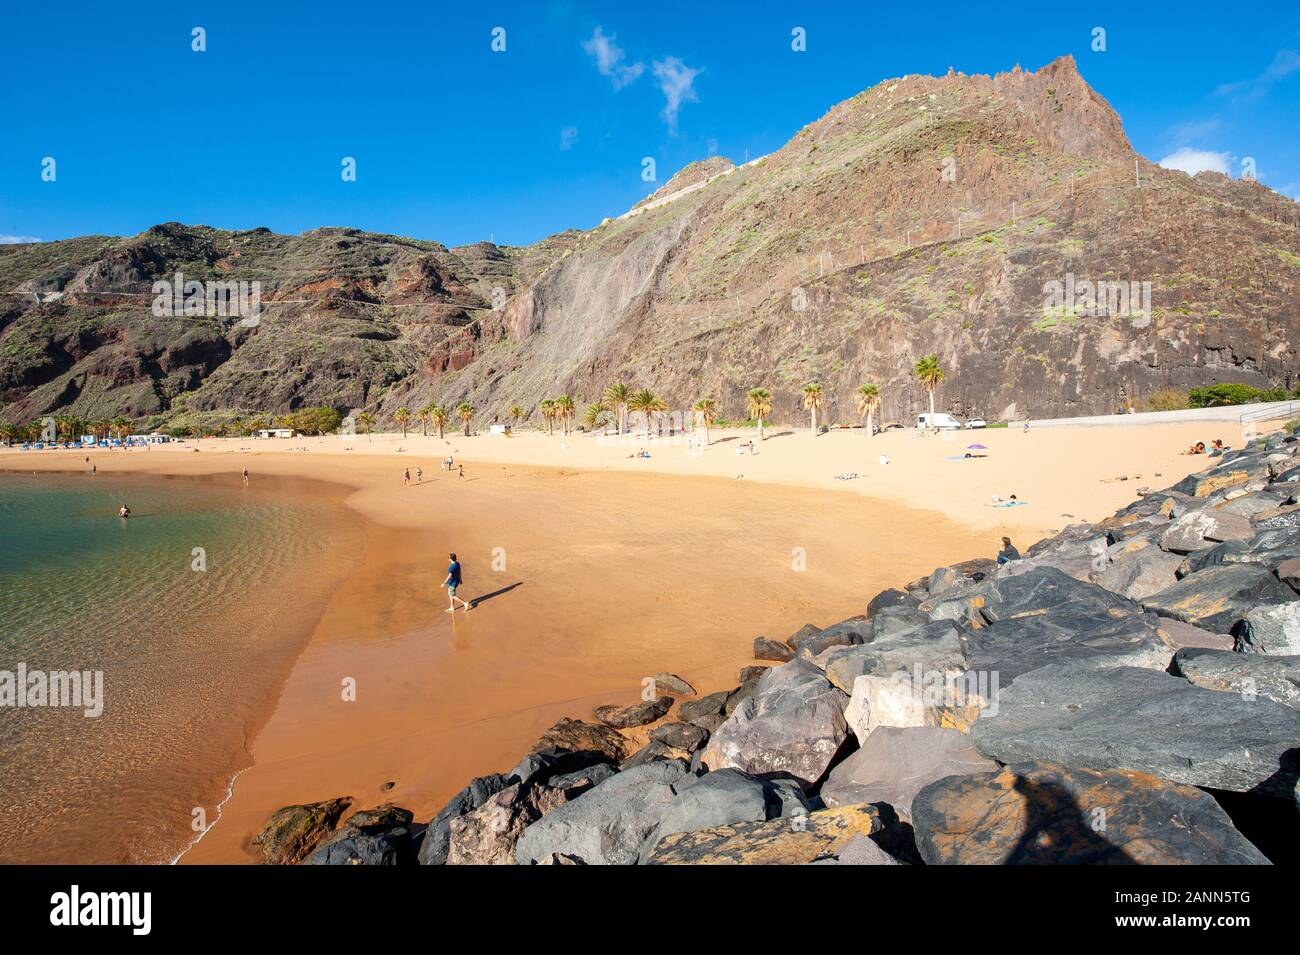 Playa de Las Teresitas es la playa más hermosa de la isla canaria de Tenerife. La arena blanca fue enviado desde el desierto del Sahara. Foto de stock